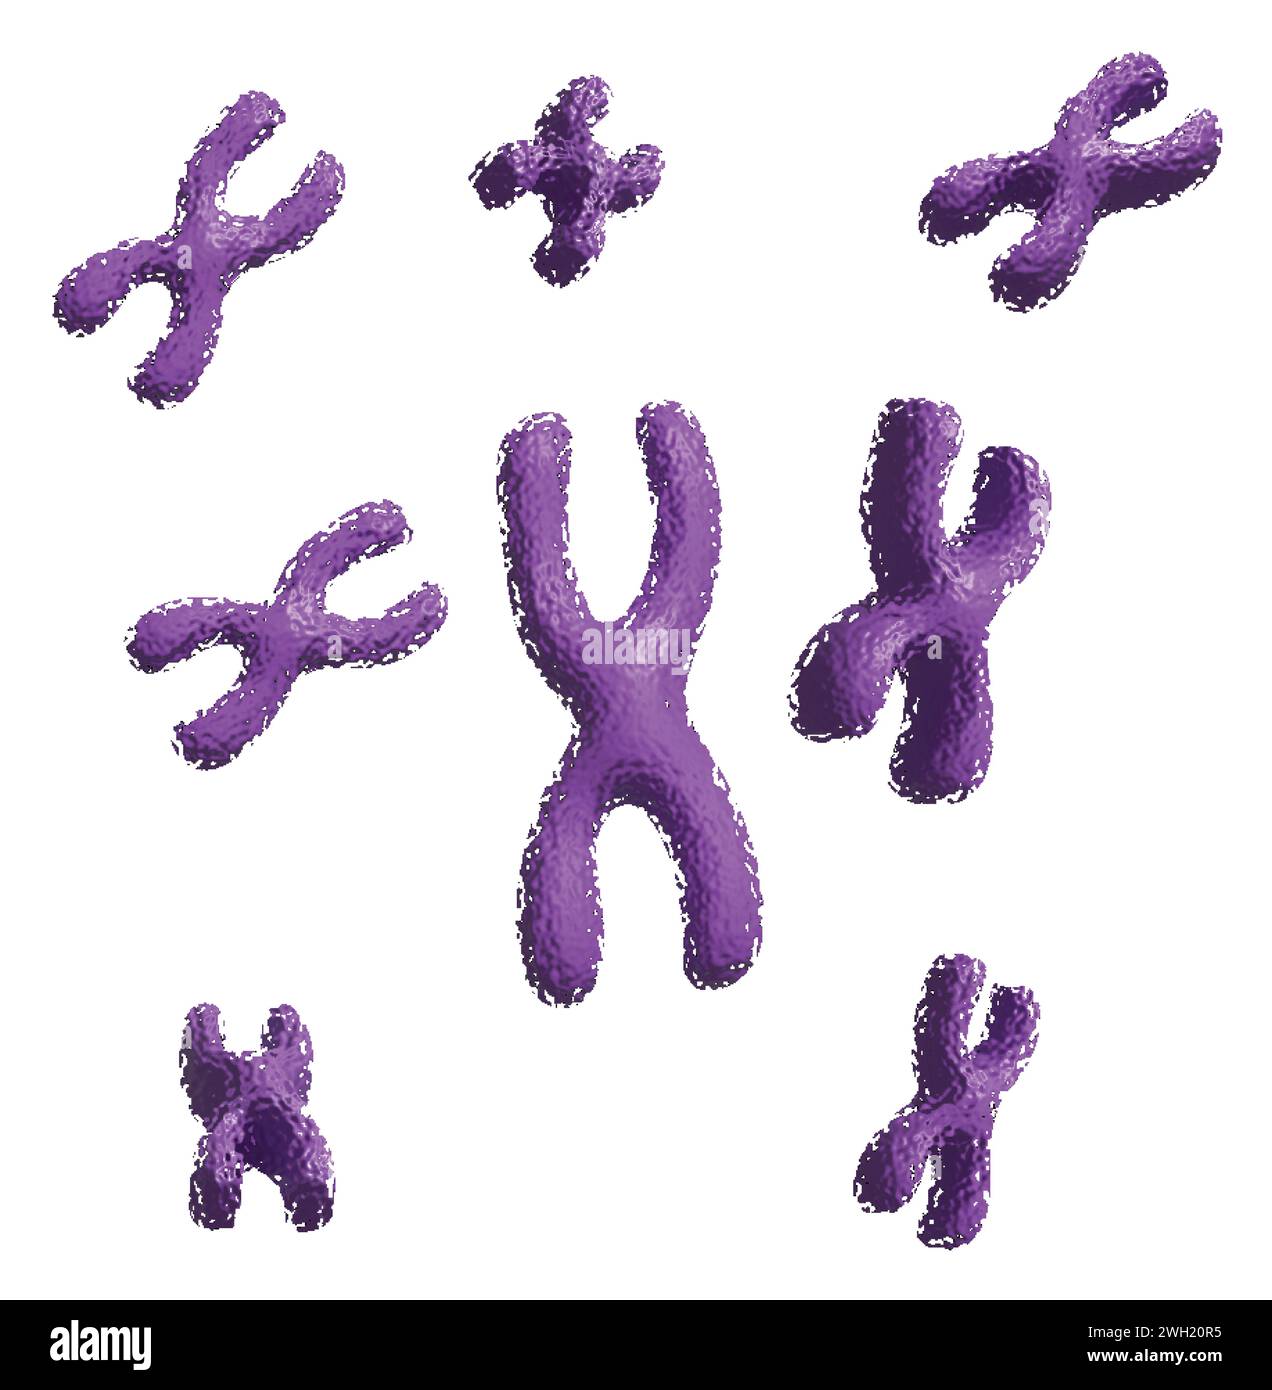 X Chromosomes icon Stock Vector